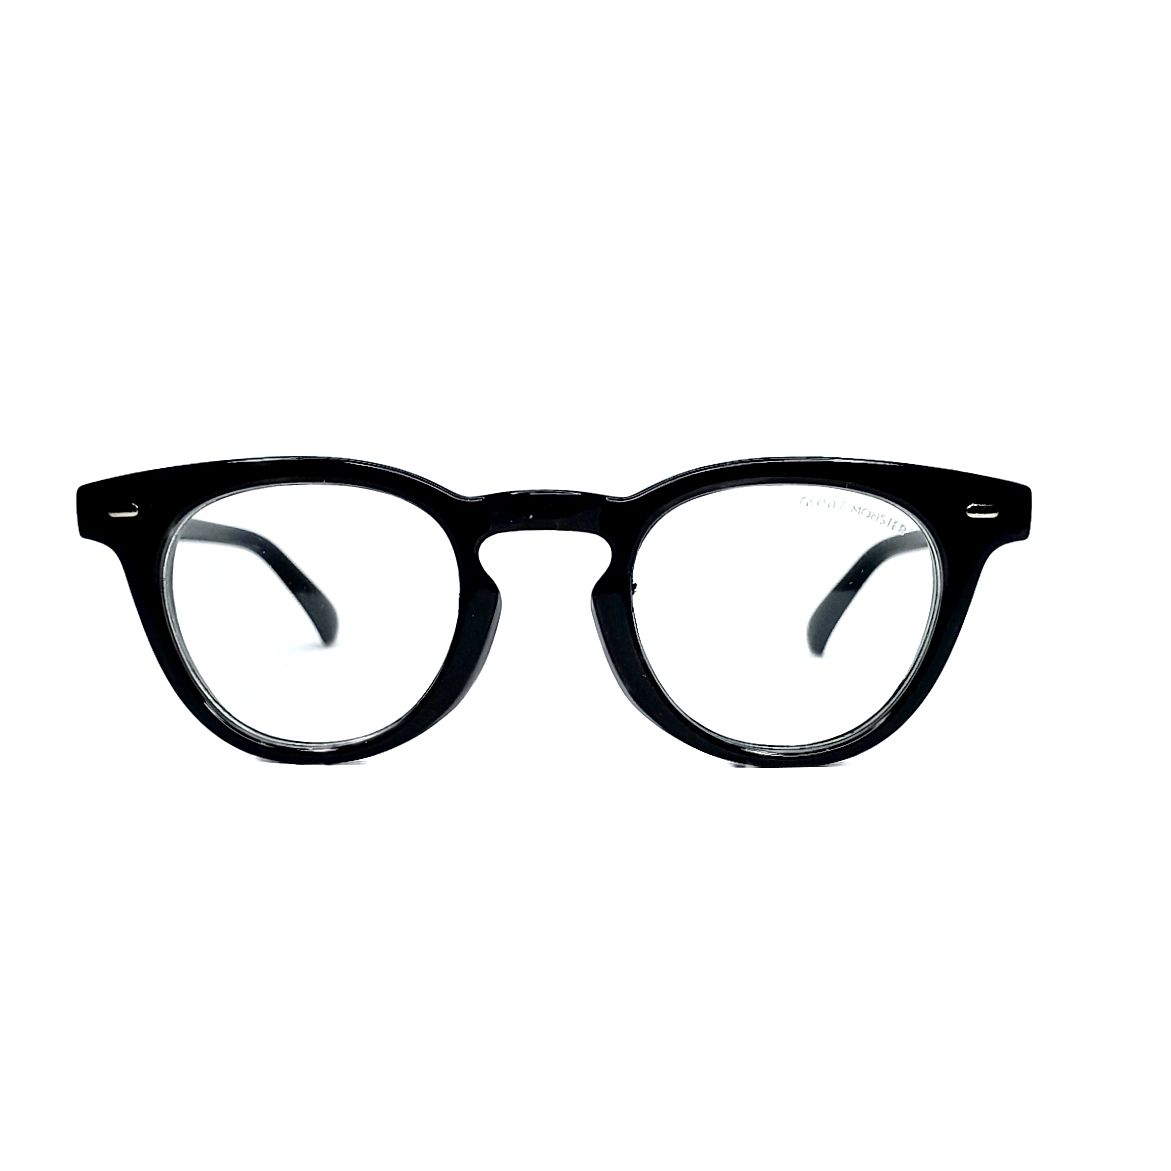 فریم عینک طبی جنتل مانستر مدل Hds9 -  - 1